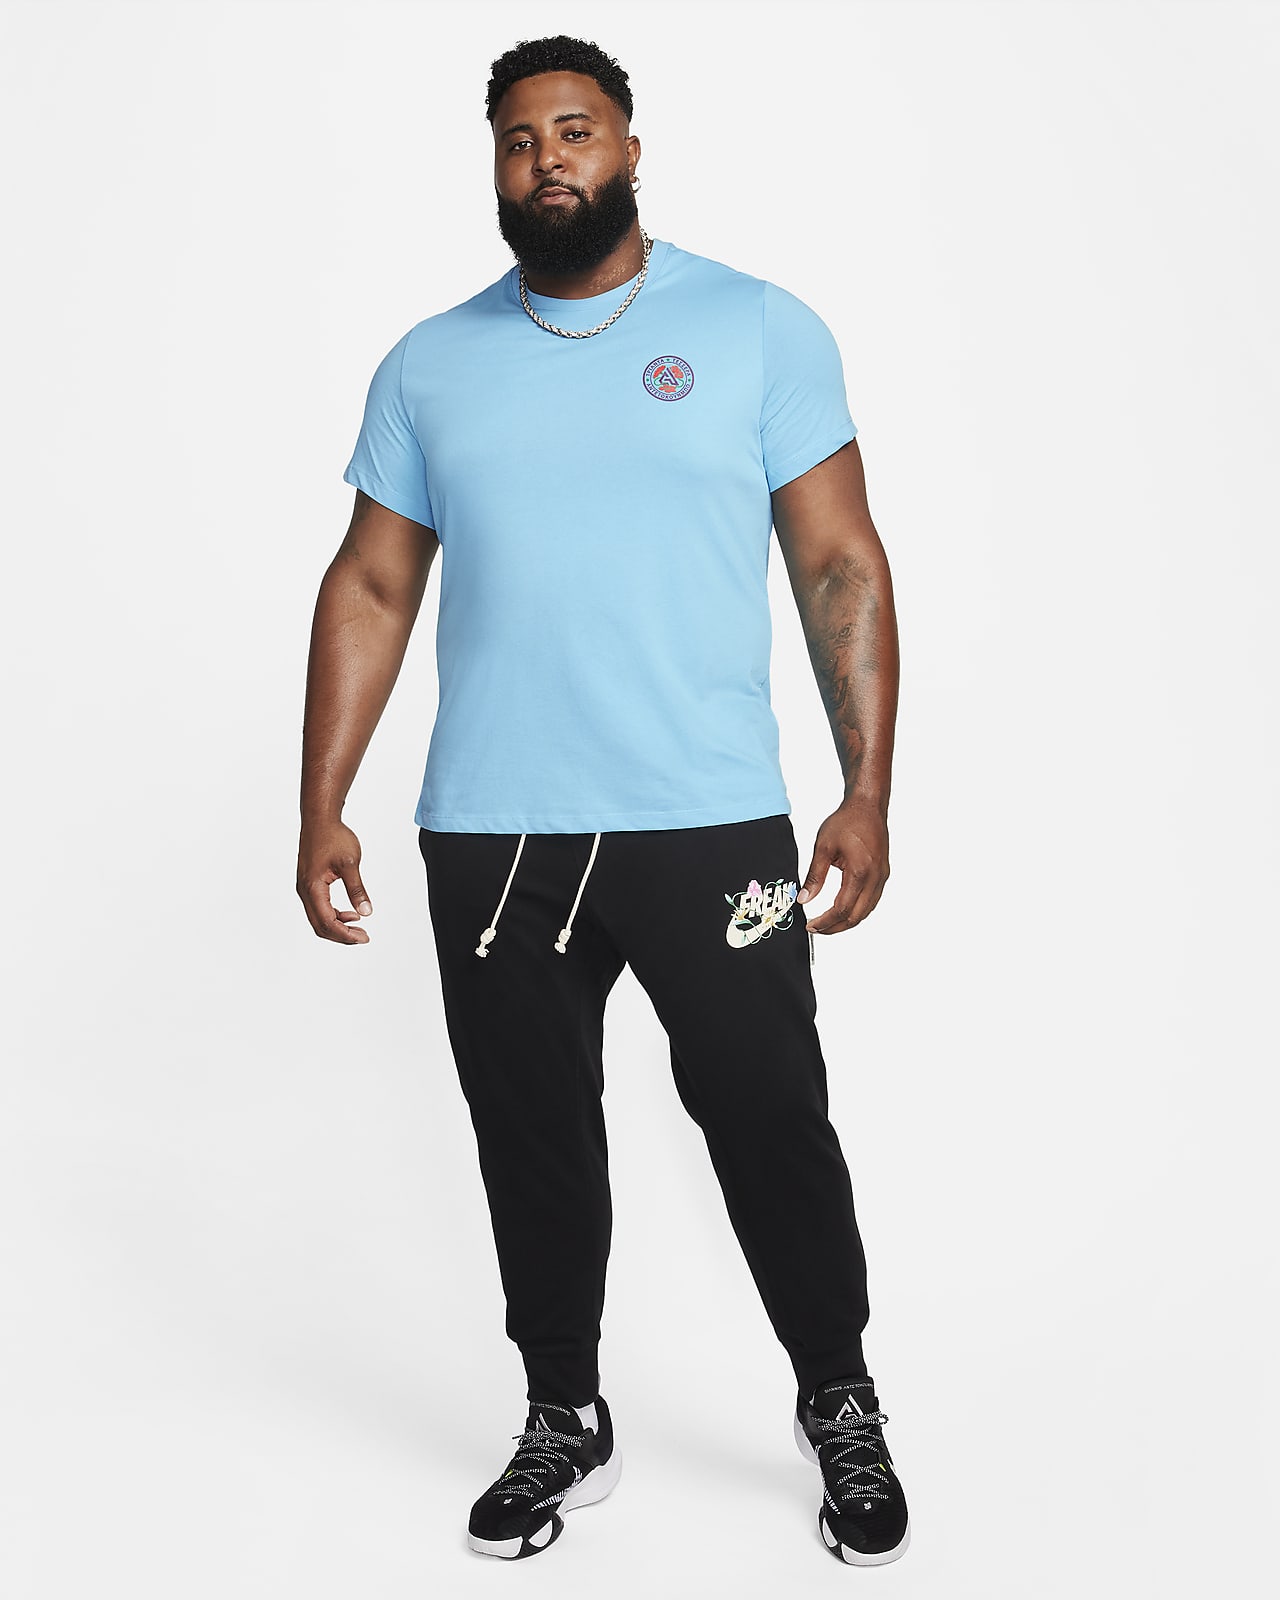 Joggers Nike Sportswear Tech Fleece worn by Giannis Antetokounmpo